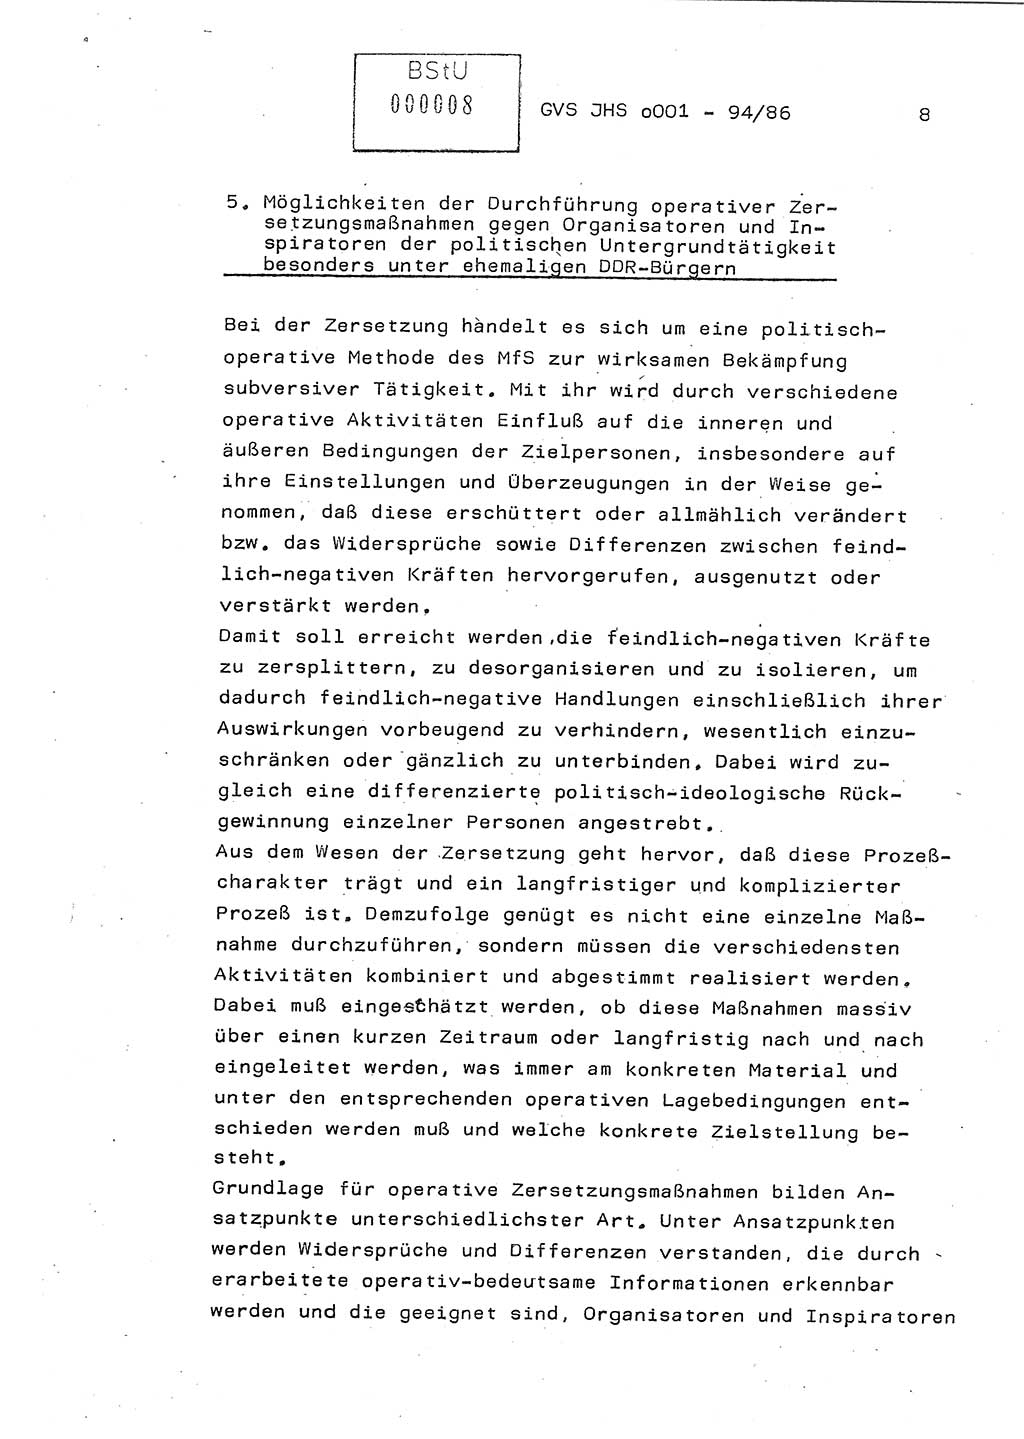 Diplomarbeit Oberleutnant Volkmar Pechmann (HA ⅩⅩ/5), Ministerium für Staatssicherheit (MfS) [Deutsche Demokratische Republik (DDR)], Juristische Hochschule (JHS), Geheime Verschlußsache (GVS) o001-94/86, Potsdam 1986, Blatt 8 (Dipl.-Arb. MfS DDR JHS GVS o001-94/86 1986, Bl. 8)